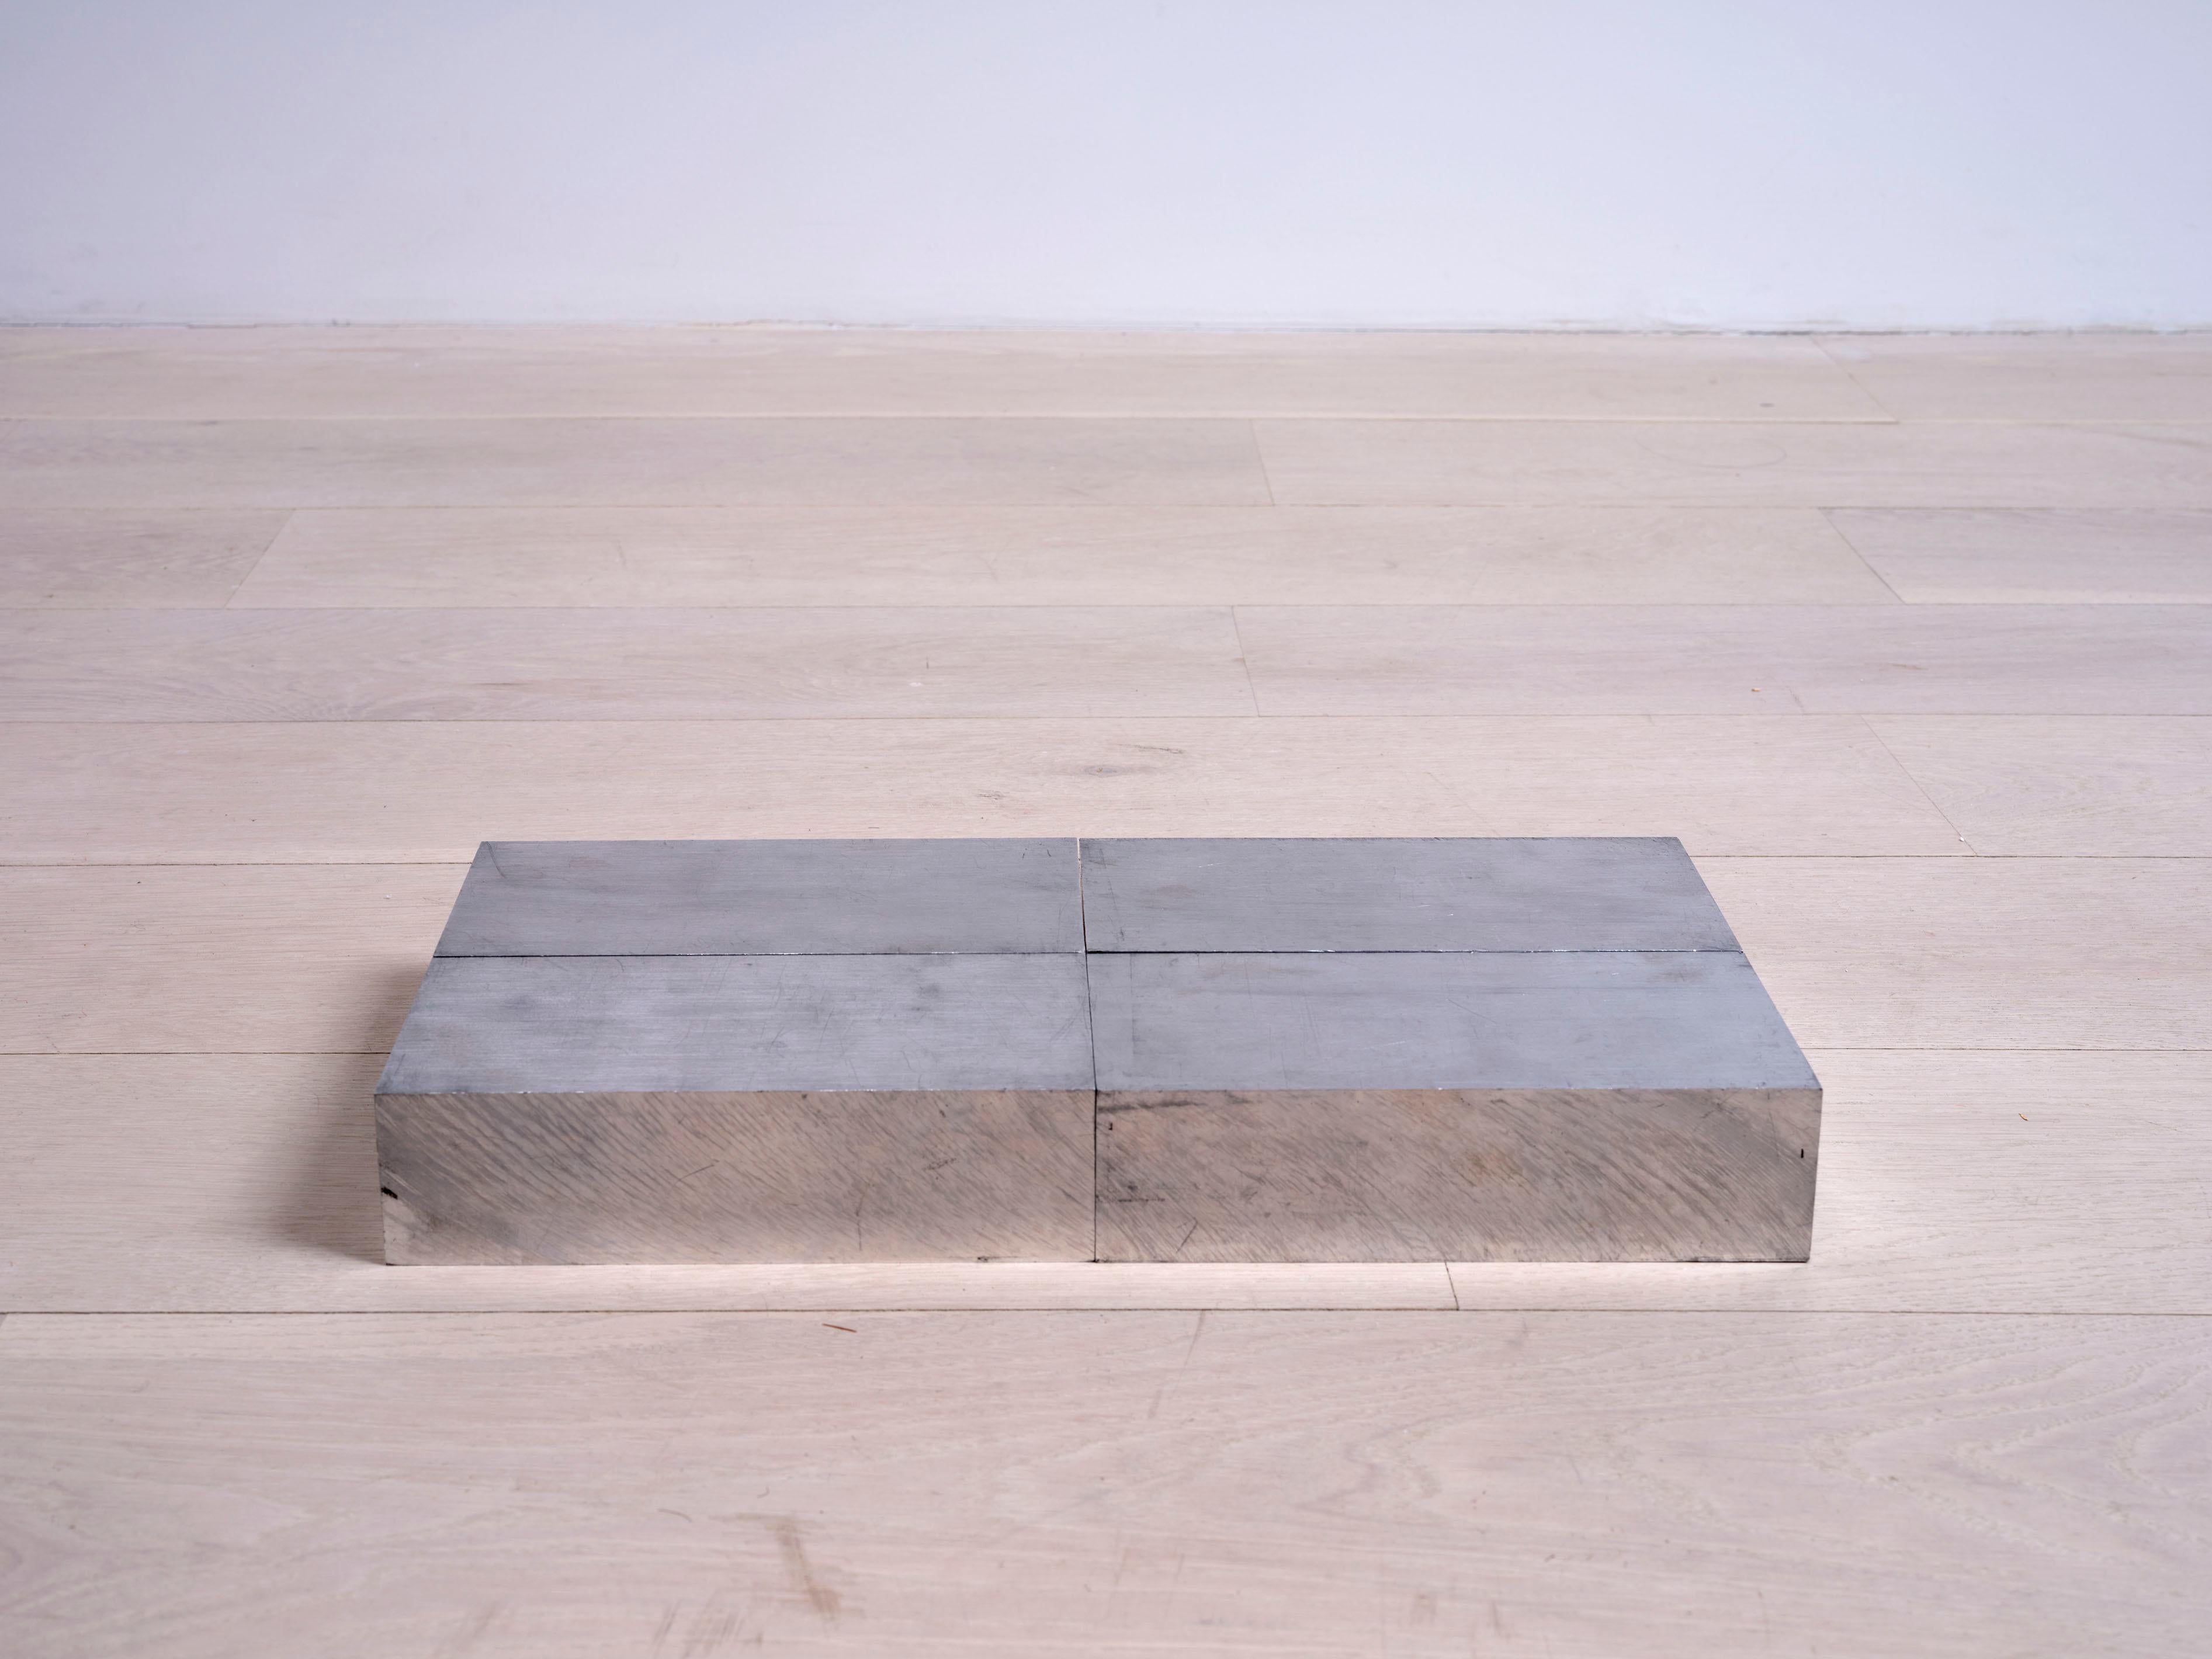 Carl Andre Abstract Sculpture - Al 4 Blocks aluminum, in 4 parts